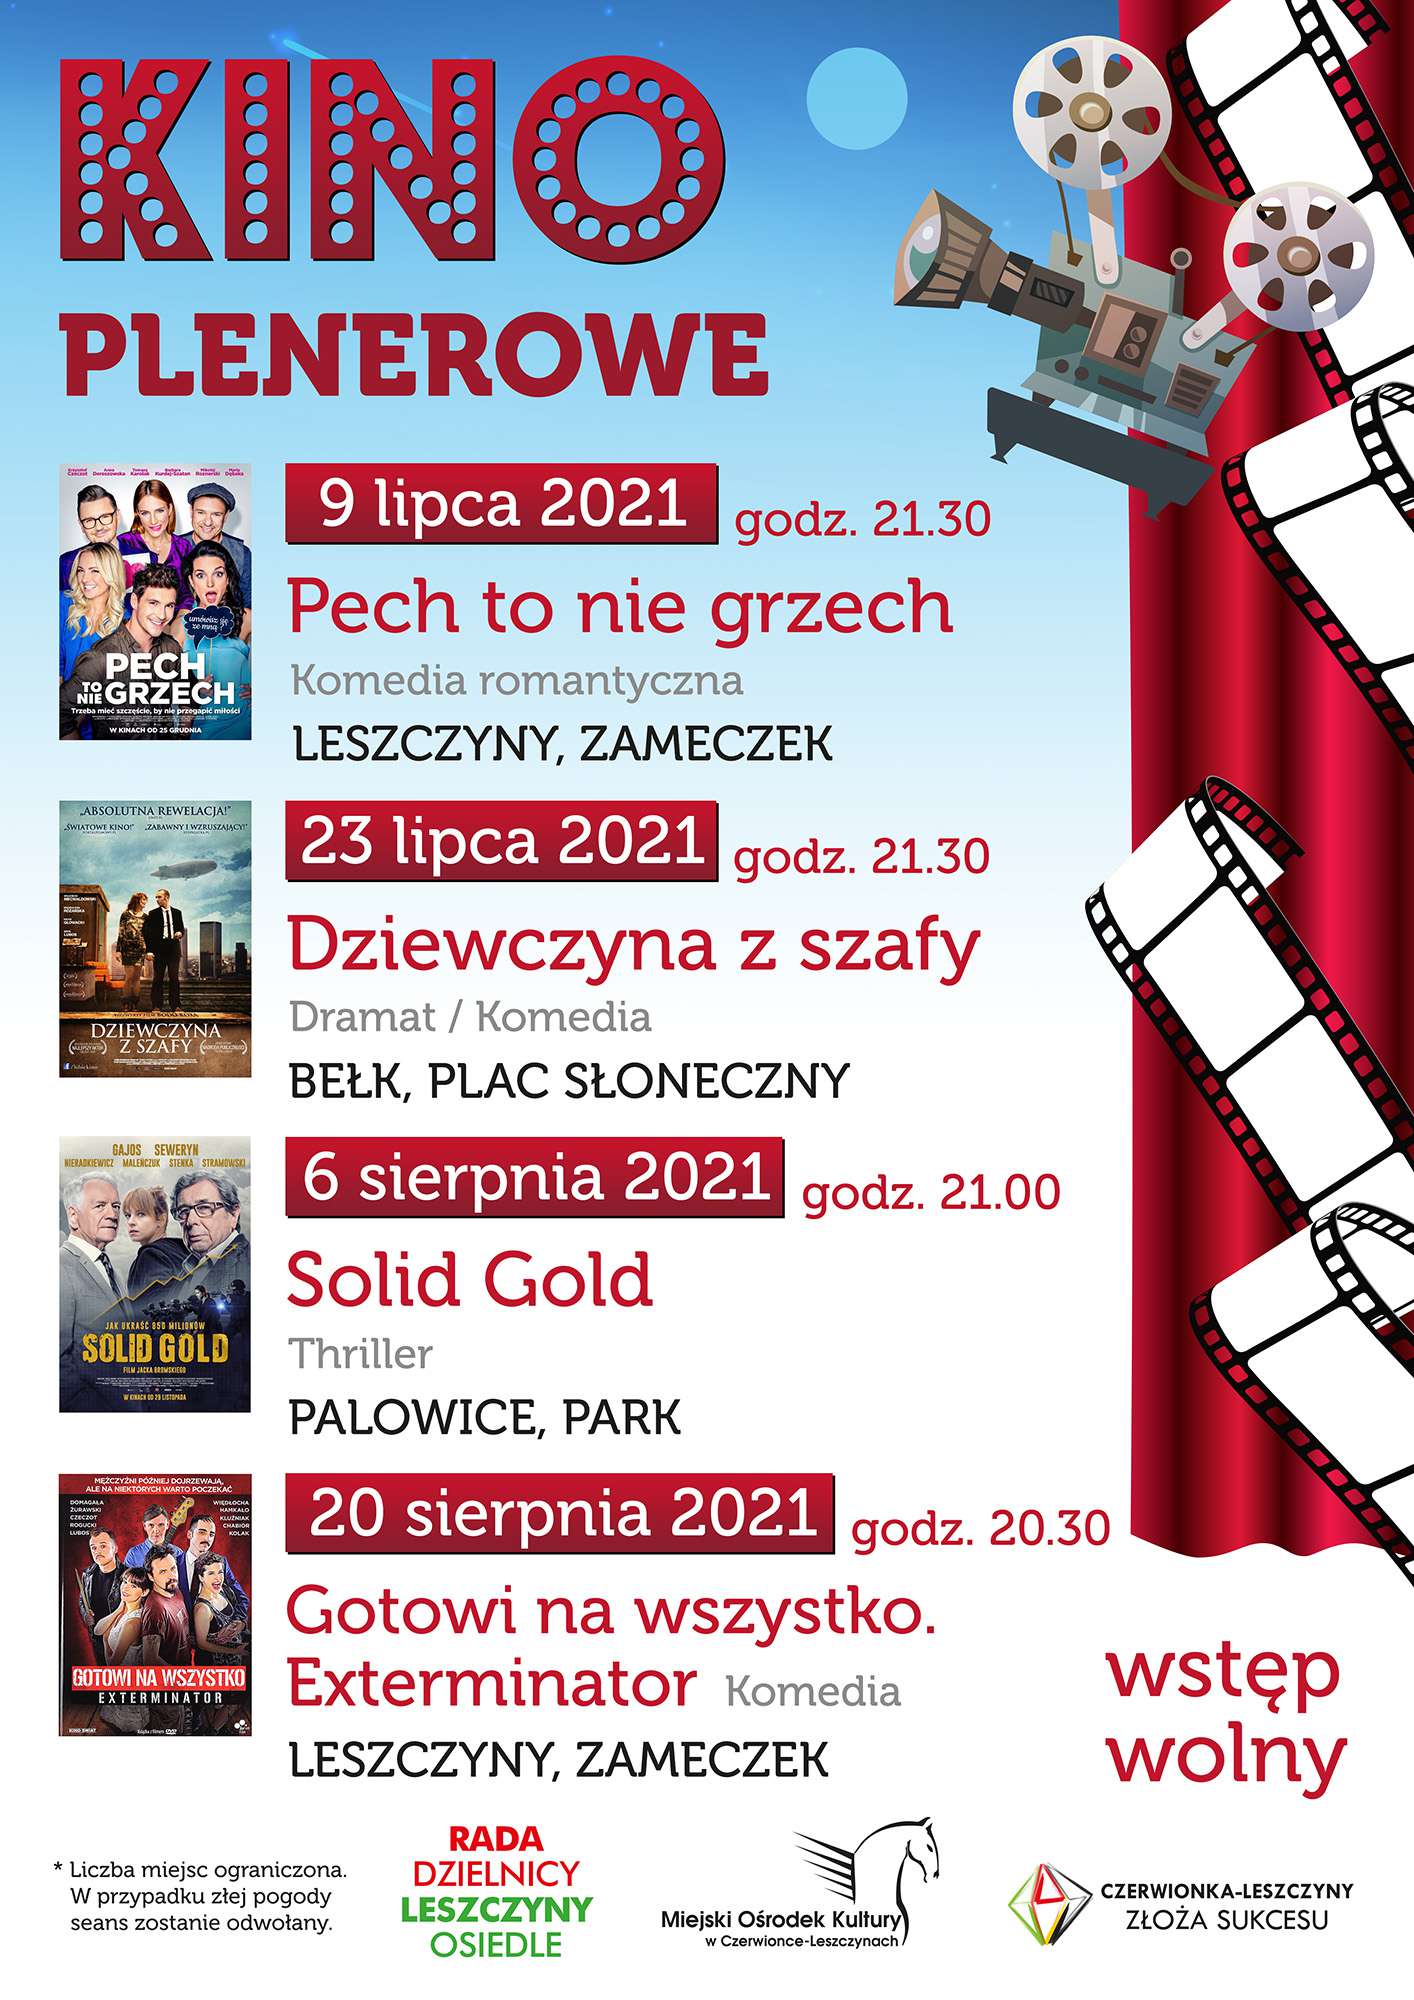 Kino Plenerowe w Czerwionce-Leszczynach